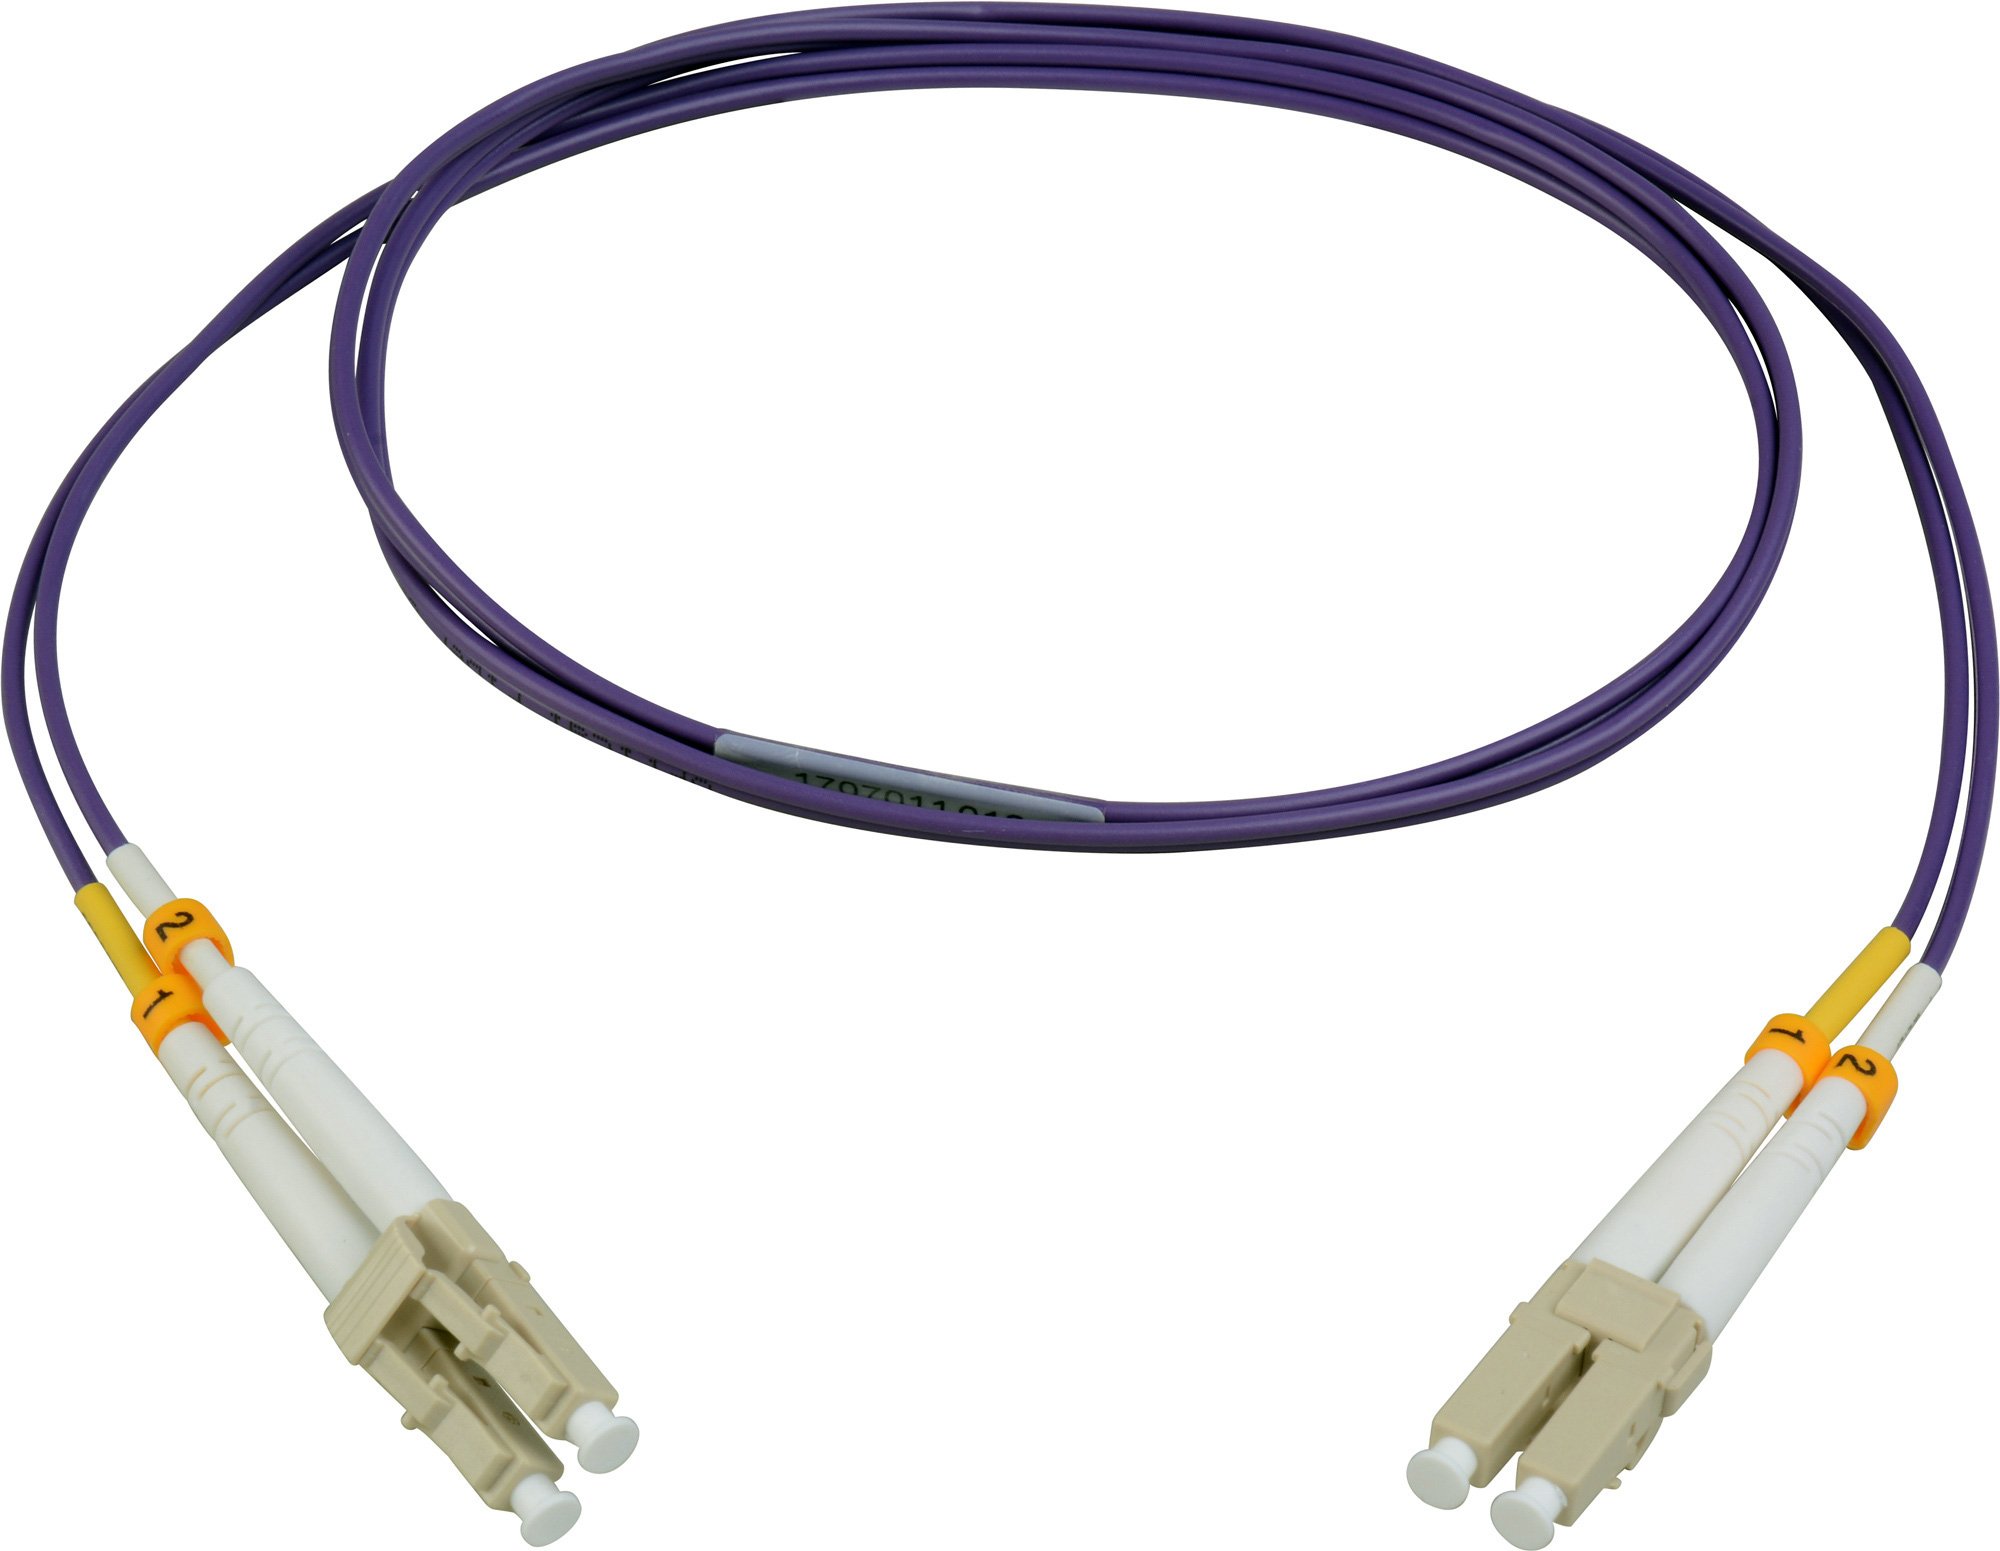 Lc Fiber Cable